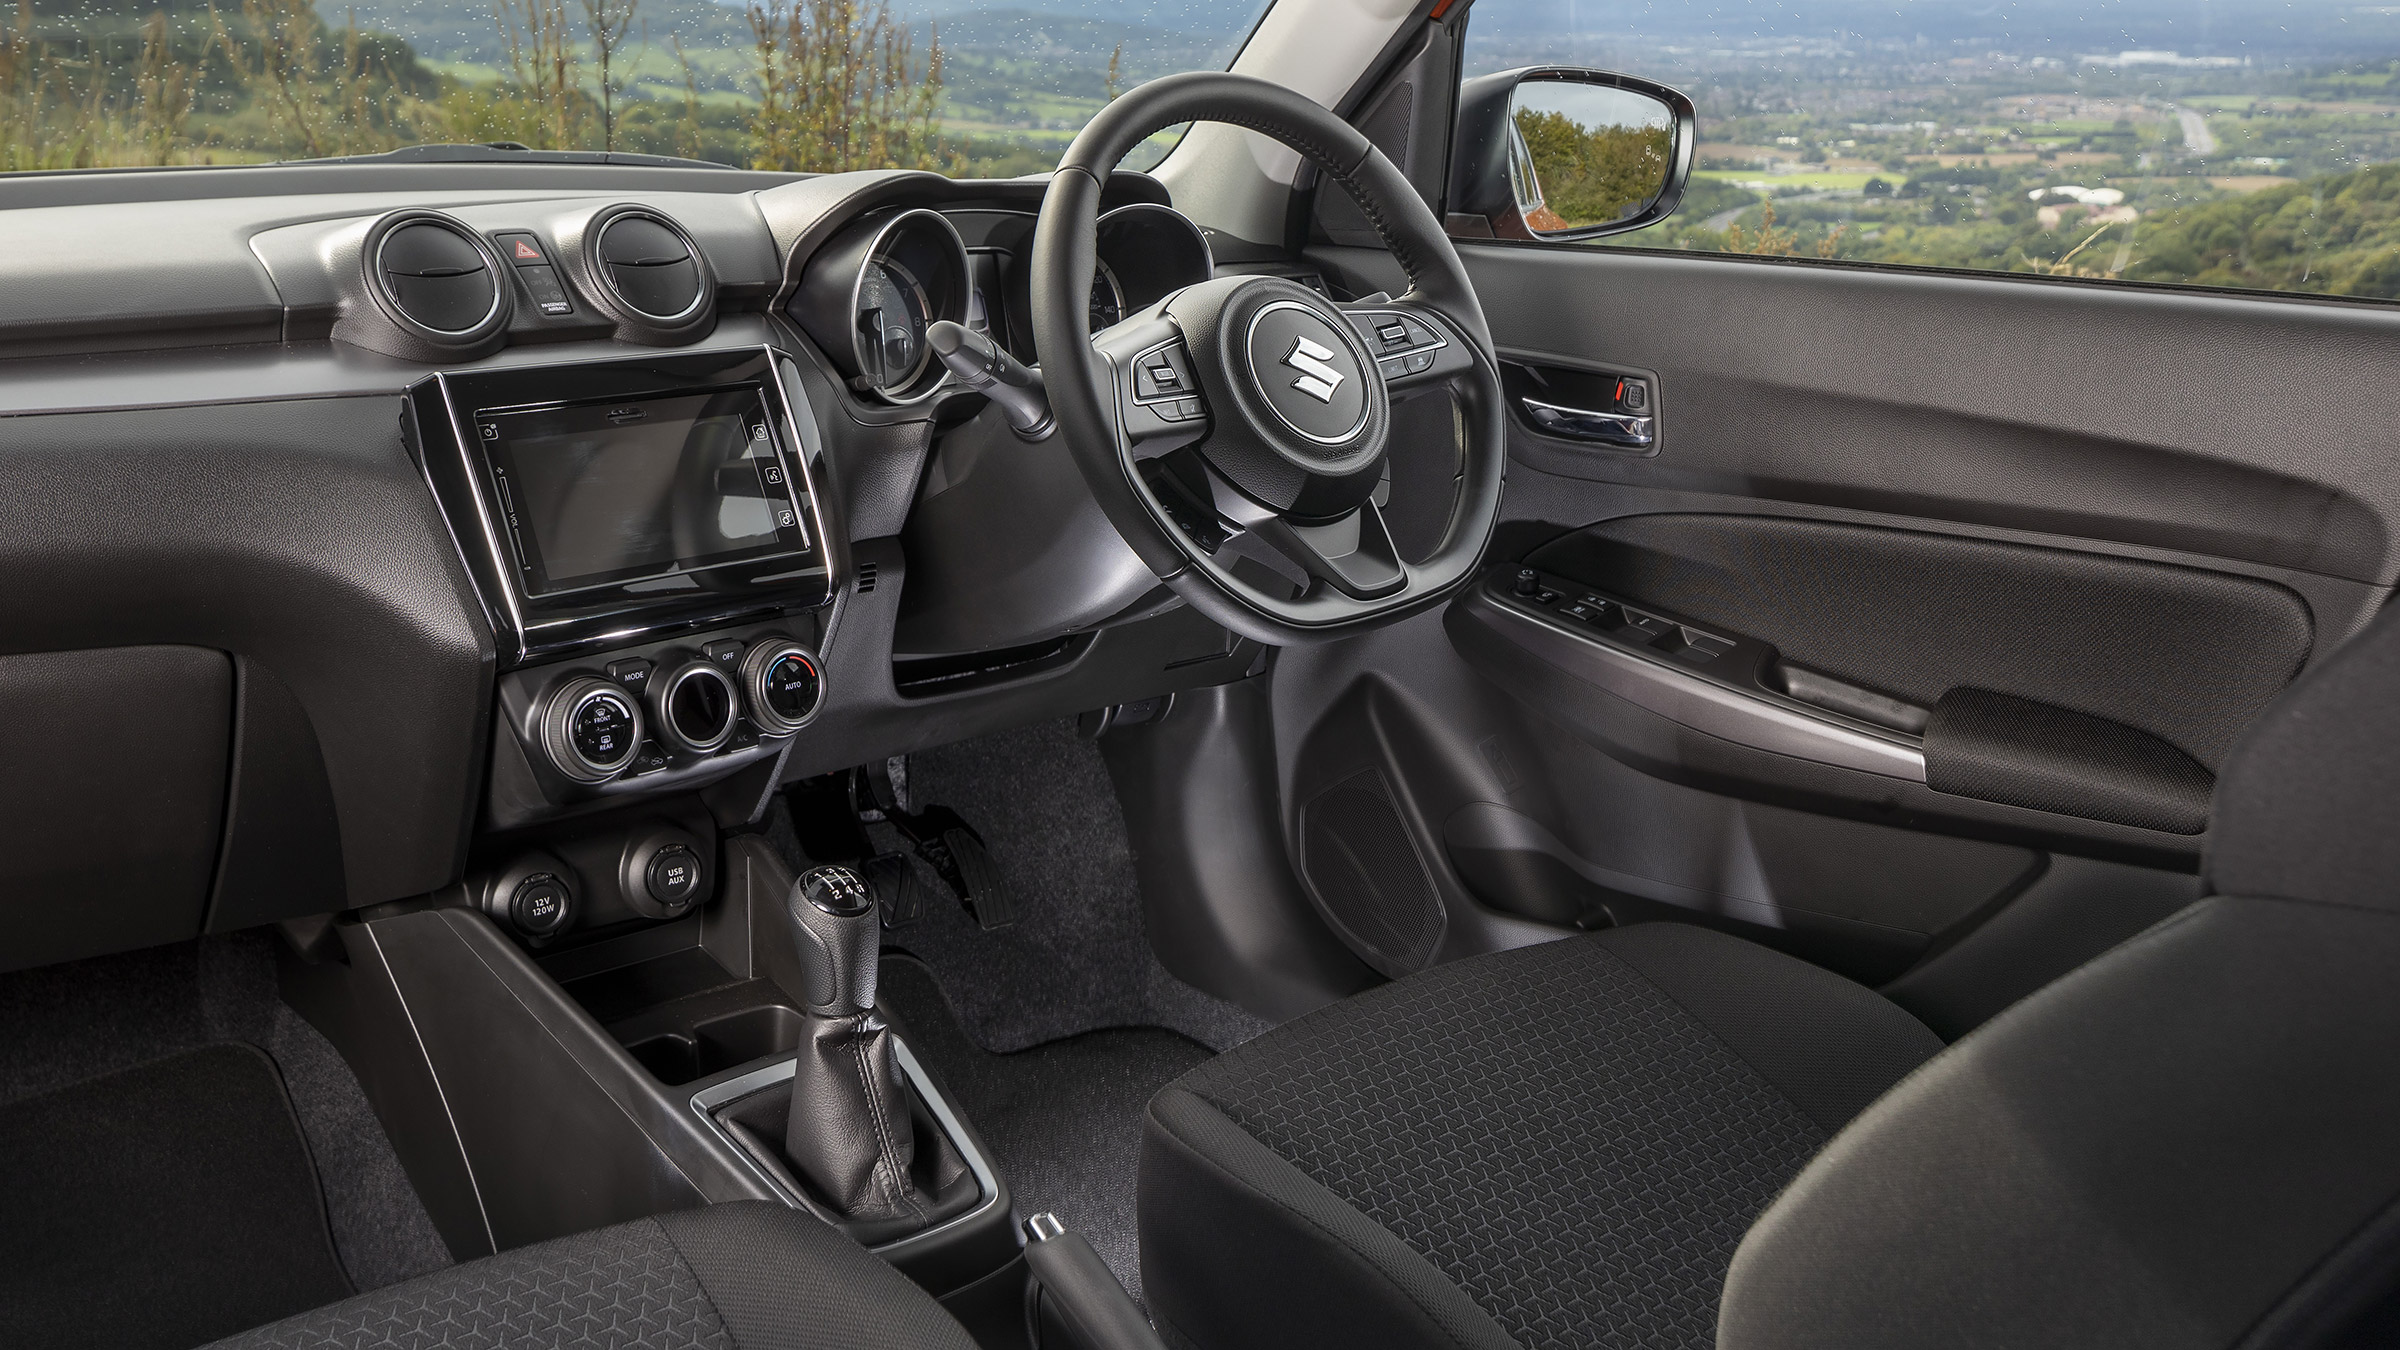 Suzuki Swift hatchback Interior & comfort 2020 review